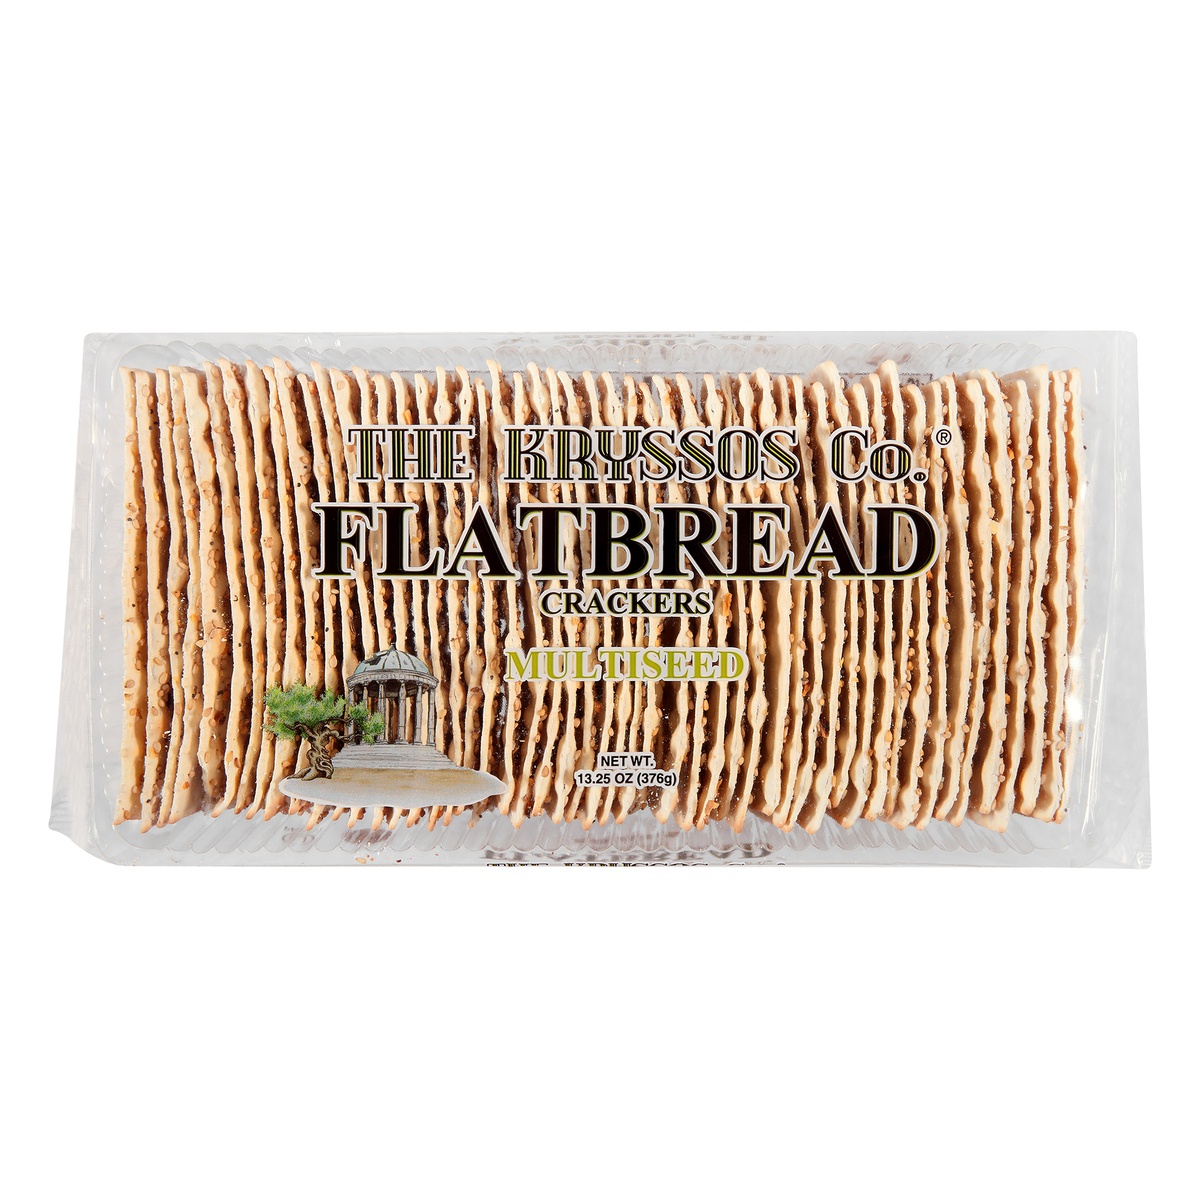 slide 1 of 1, Kryssos Flatbread Multiseed Crackers, 13.2 oz